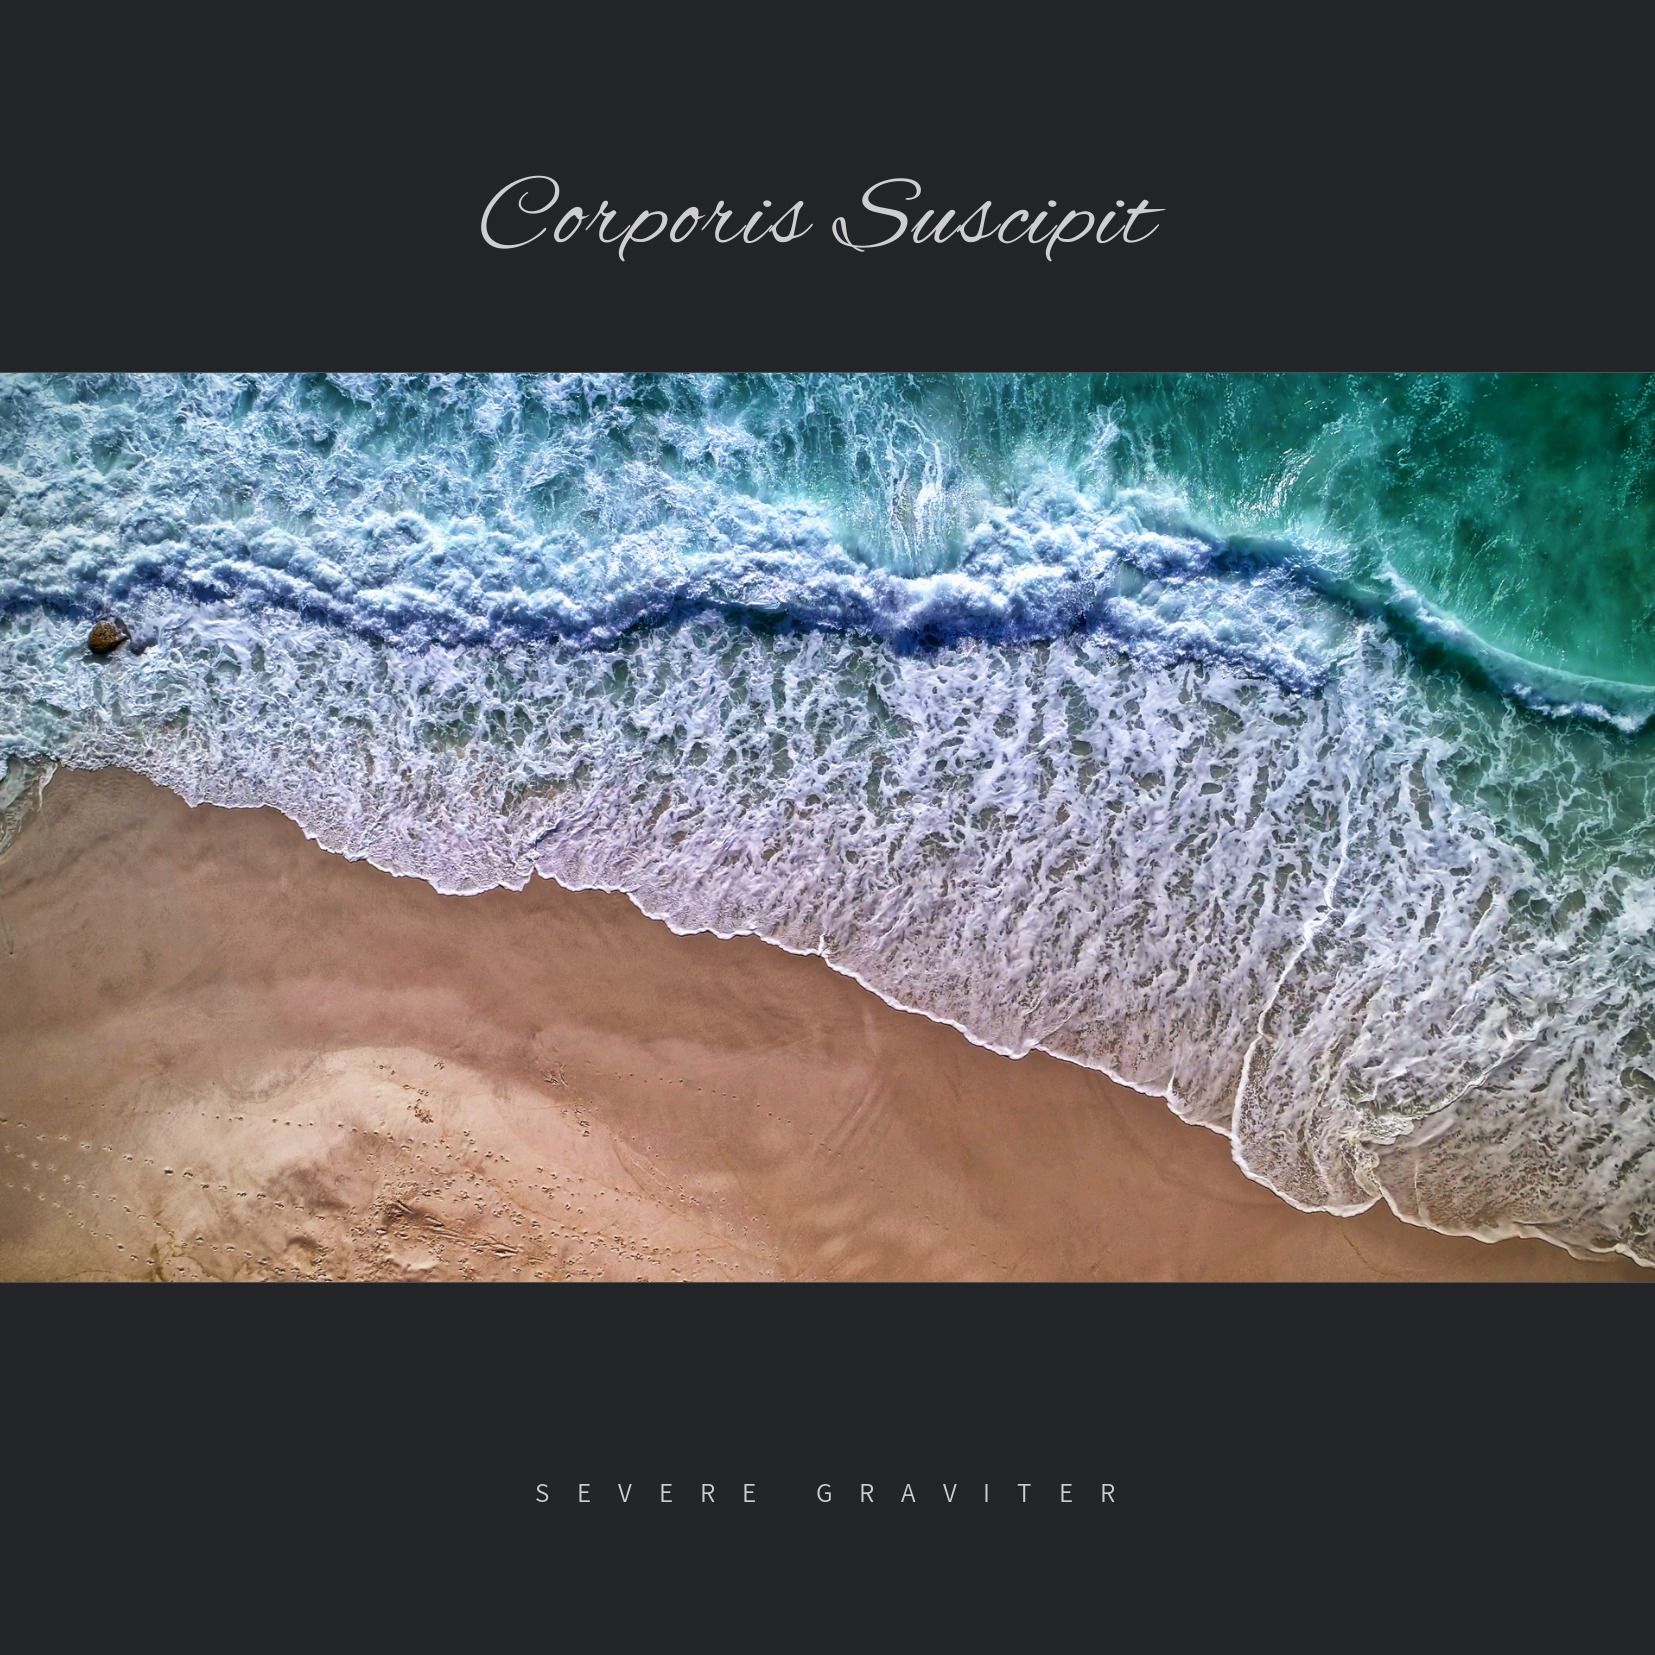 Olas rodando sobre una playa de arena con texto - Imágenes marinas en el diseño de la portada del álbum - Imagen